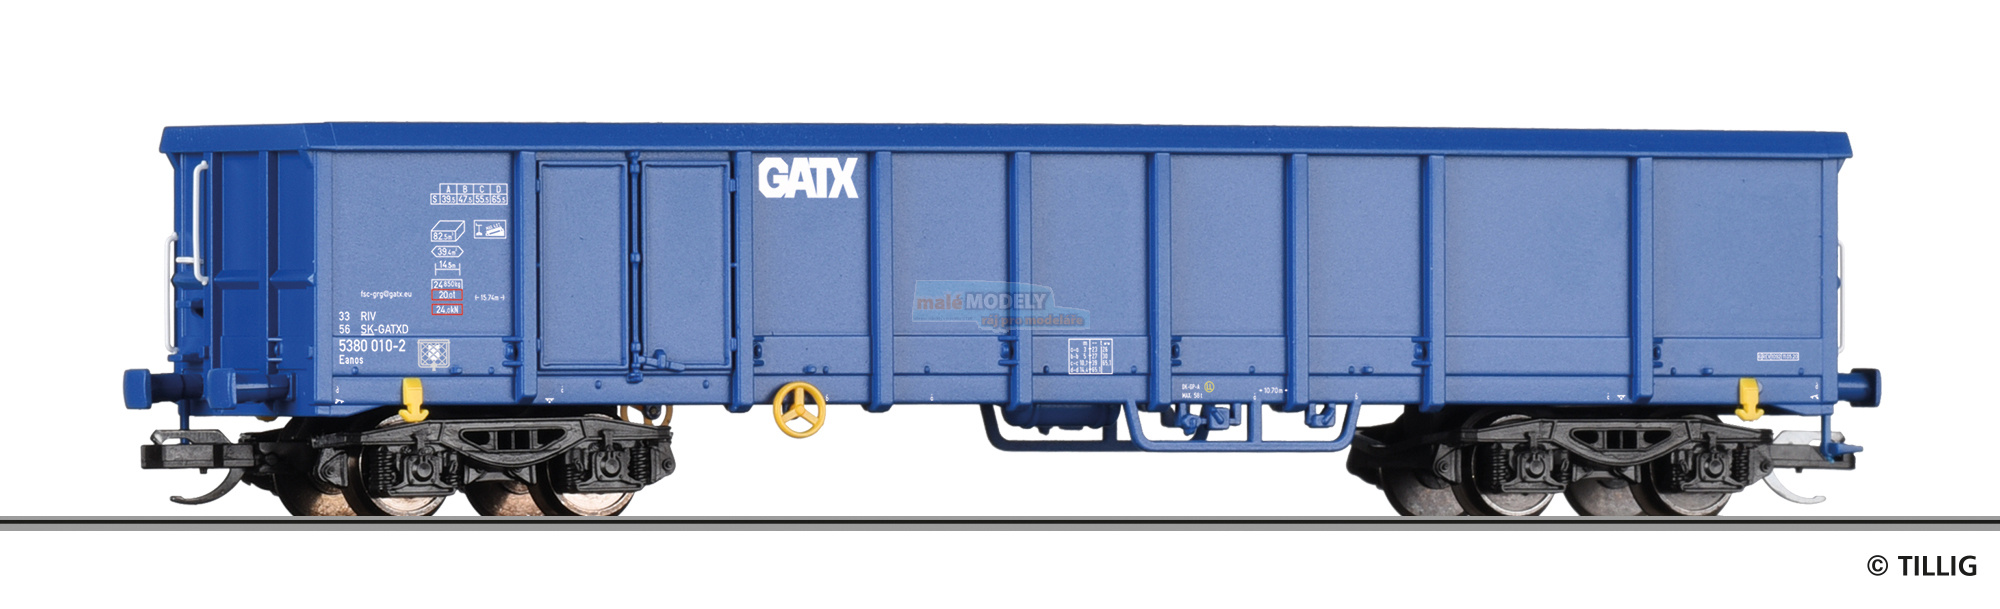 Offener Güterwagen Eaons der GATX, Ep. VI